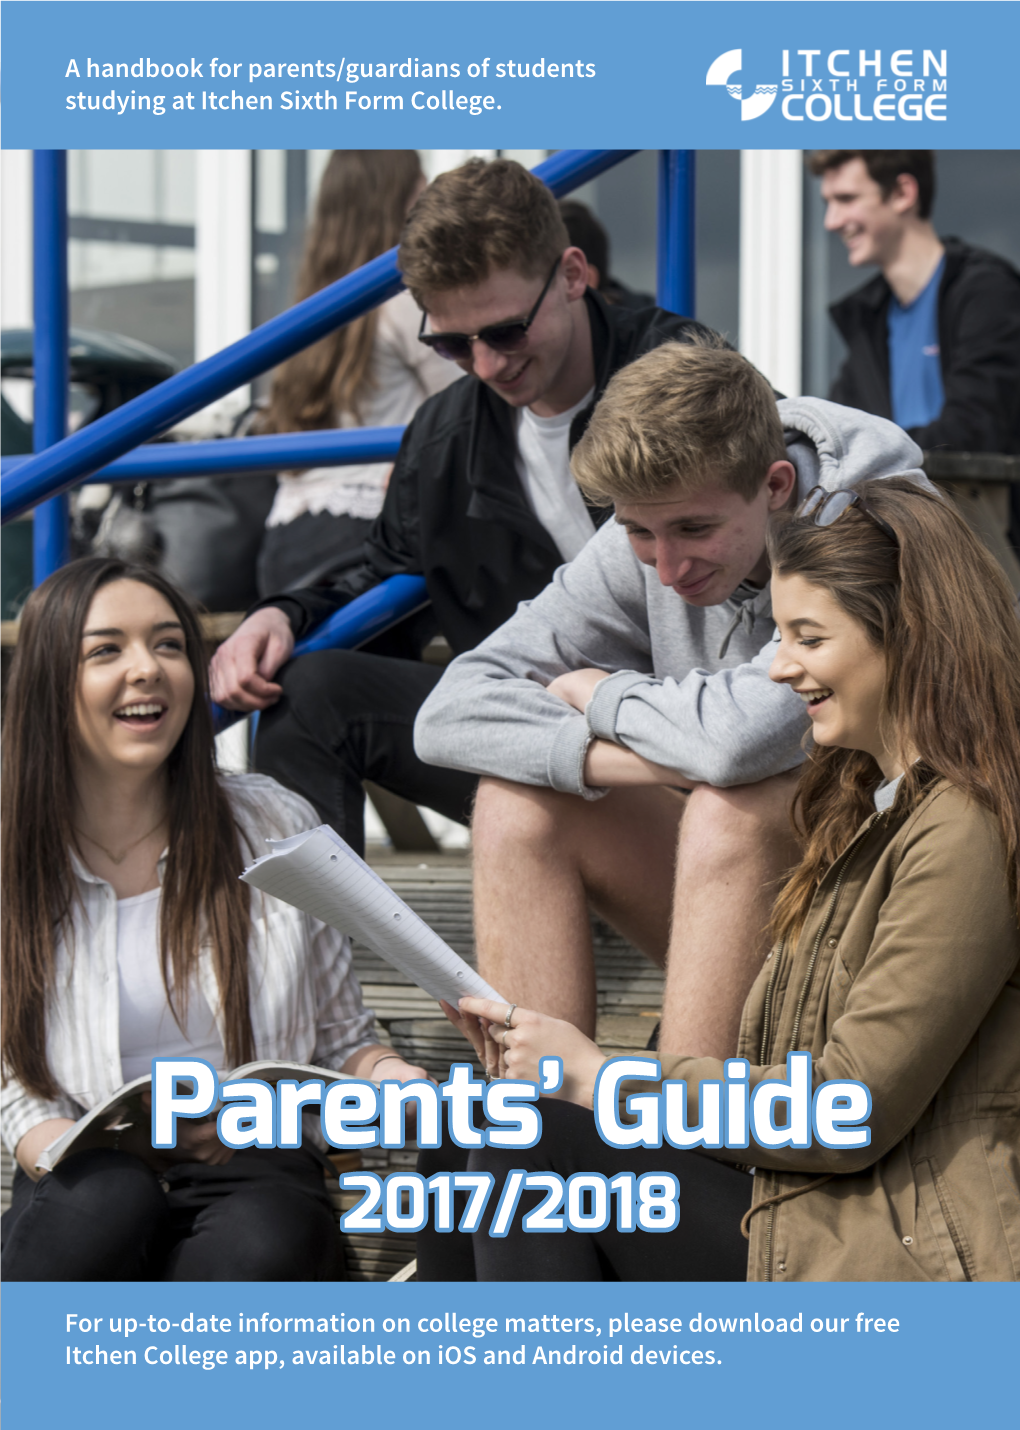 Parents' Guide